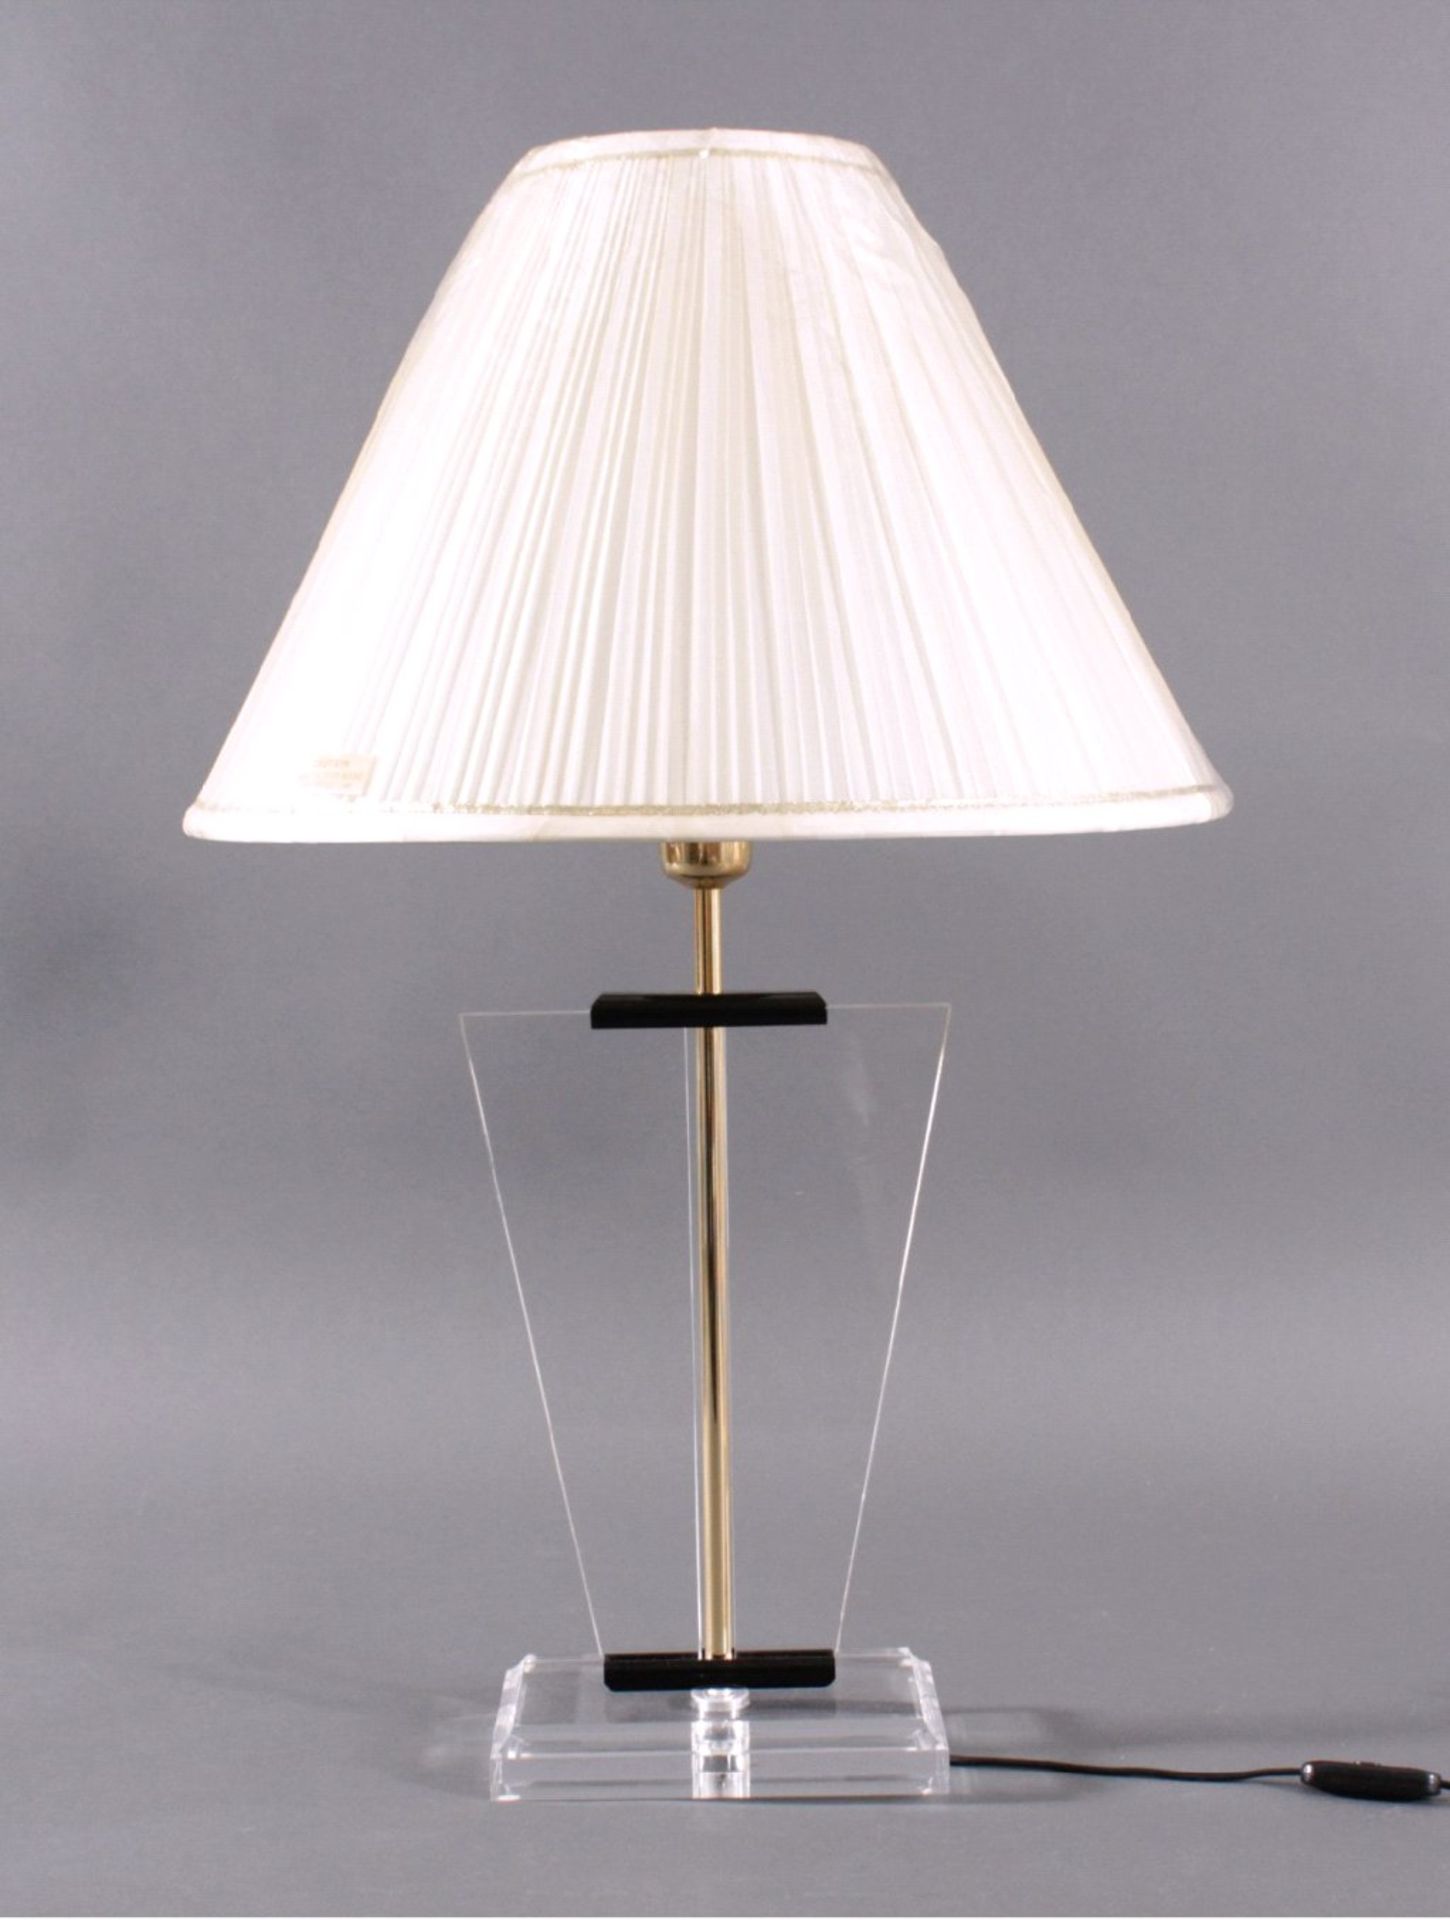 Tischlampe wohl 70er JahreDurchsichtiger Acrylfuss mit durchlaufendem Messingrohr, ca.H- 73 cm, D-